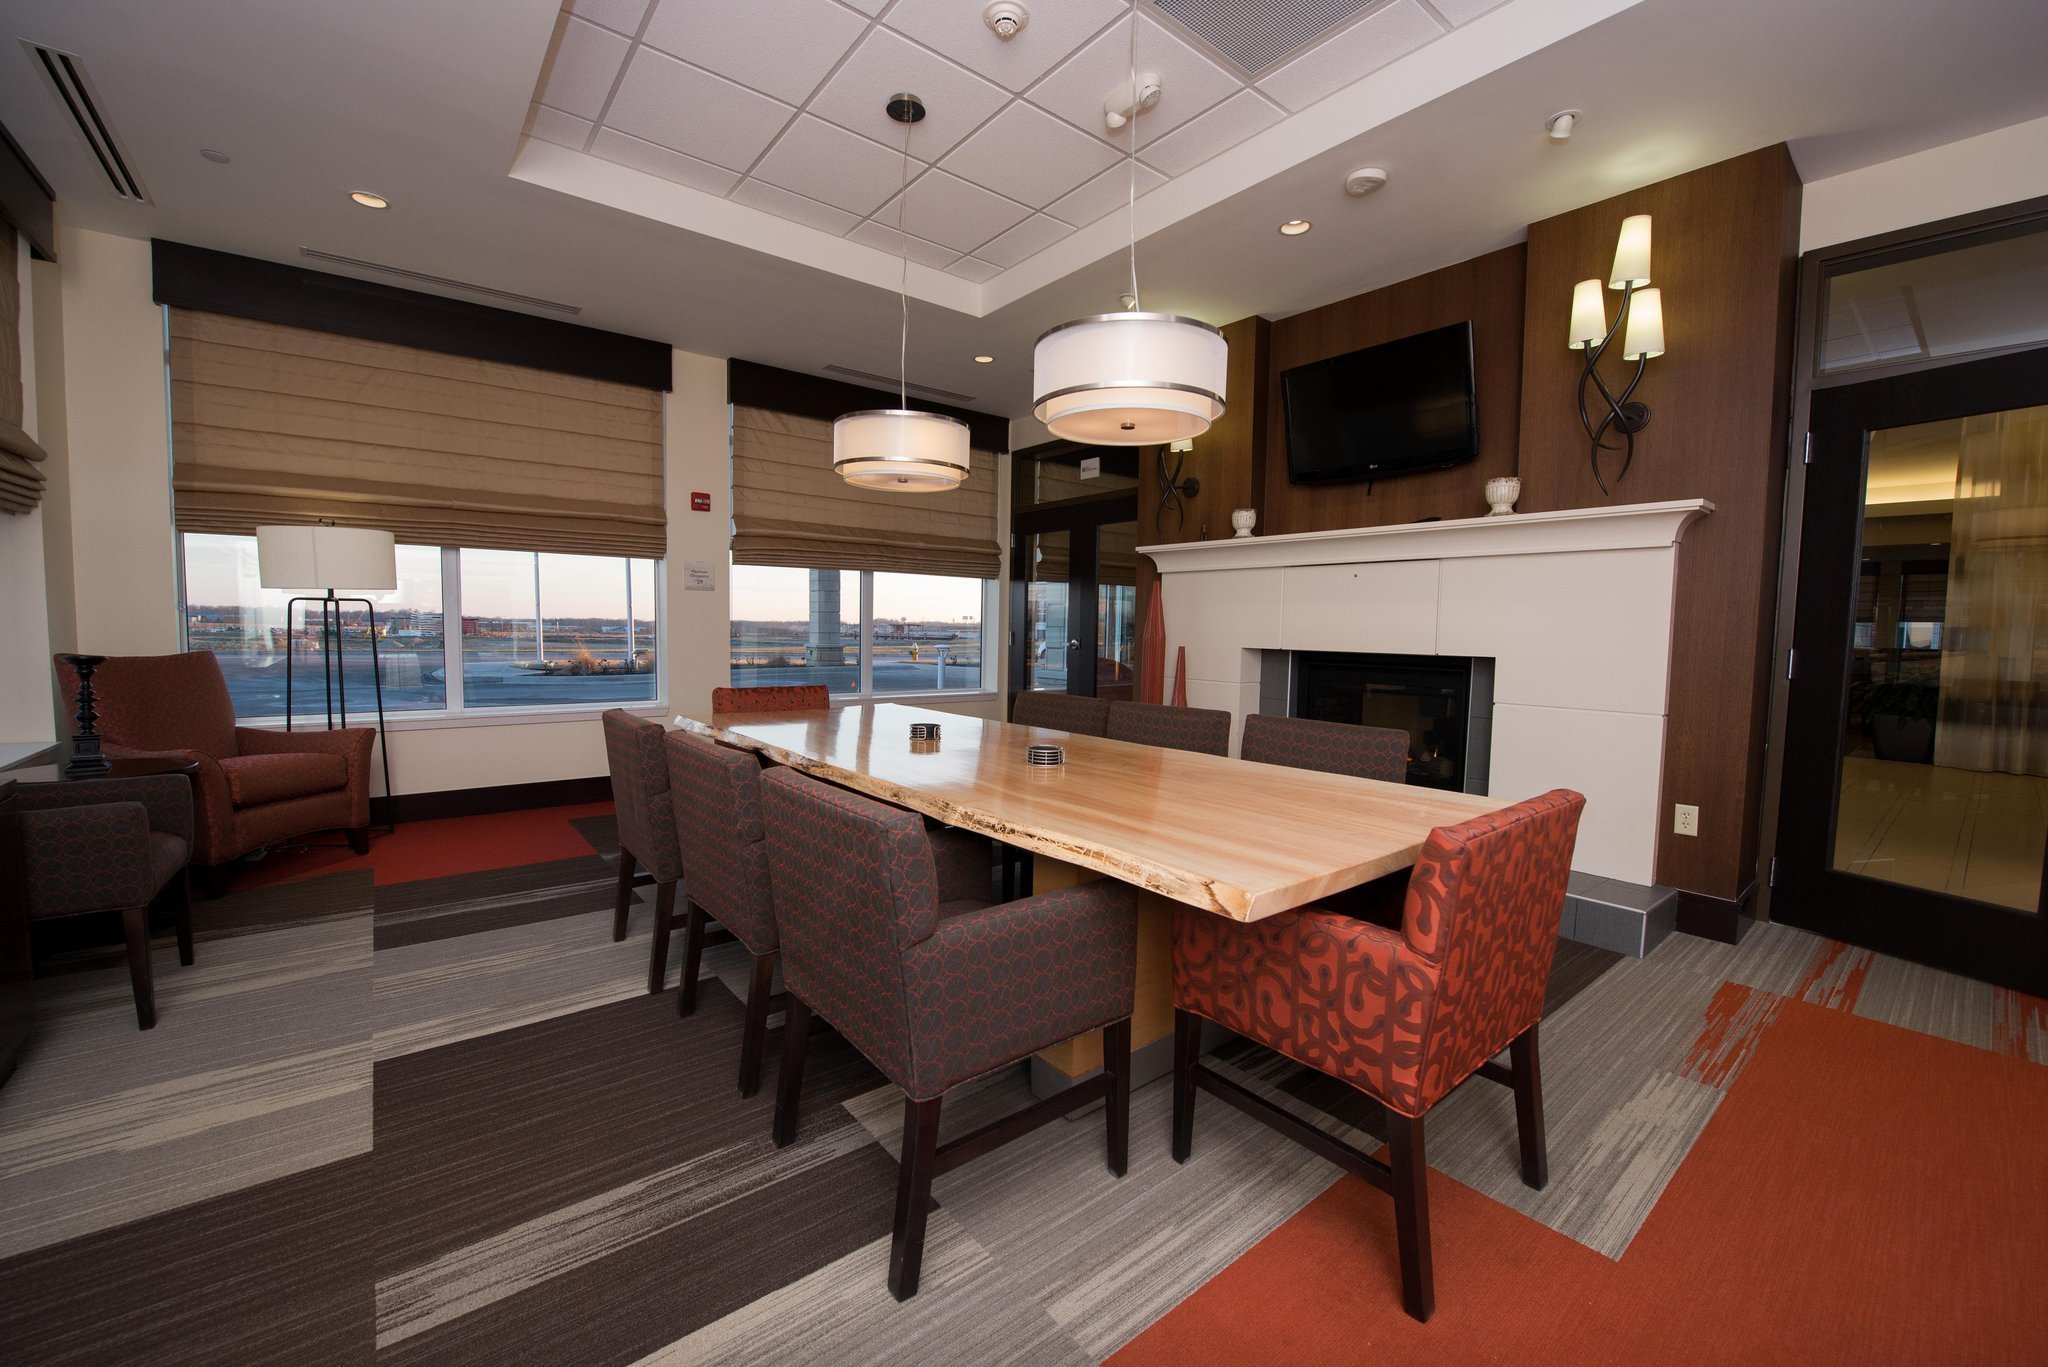 Photo of Homewood Suites By Hilton Cincinnati Midtown, Cincinnati, OH